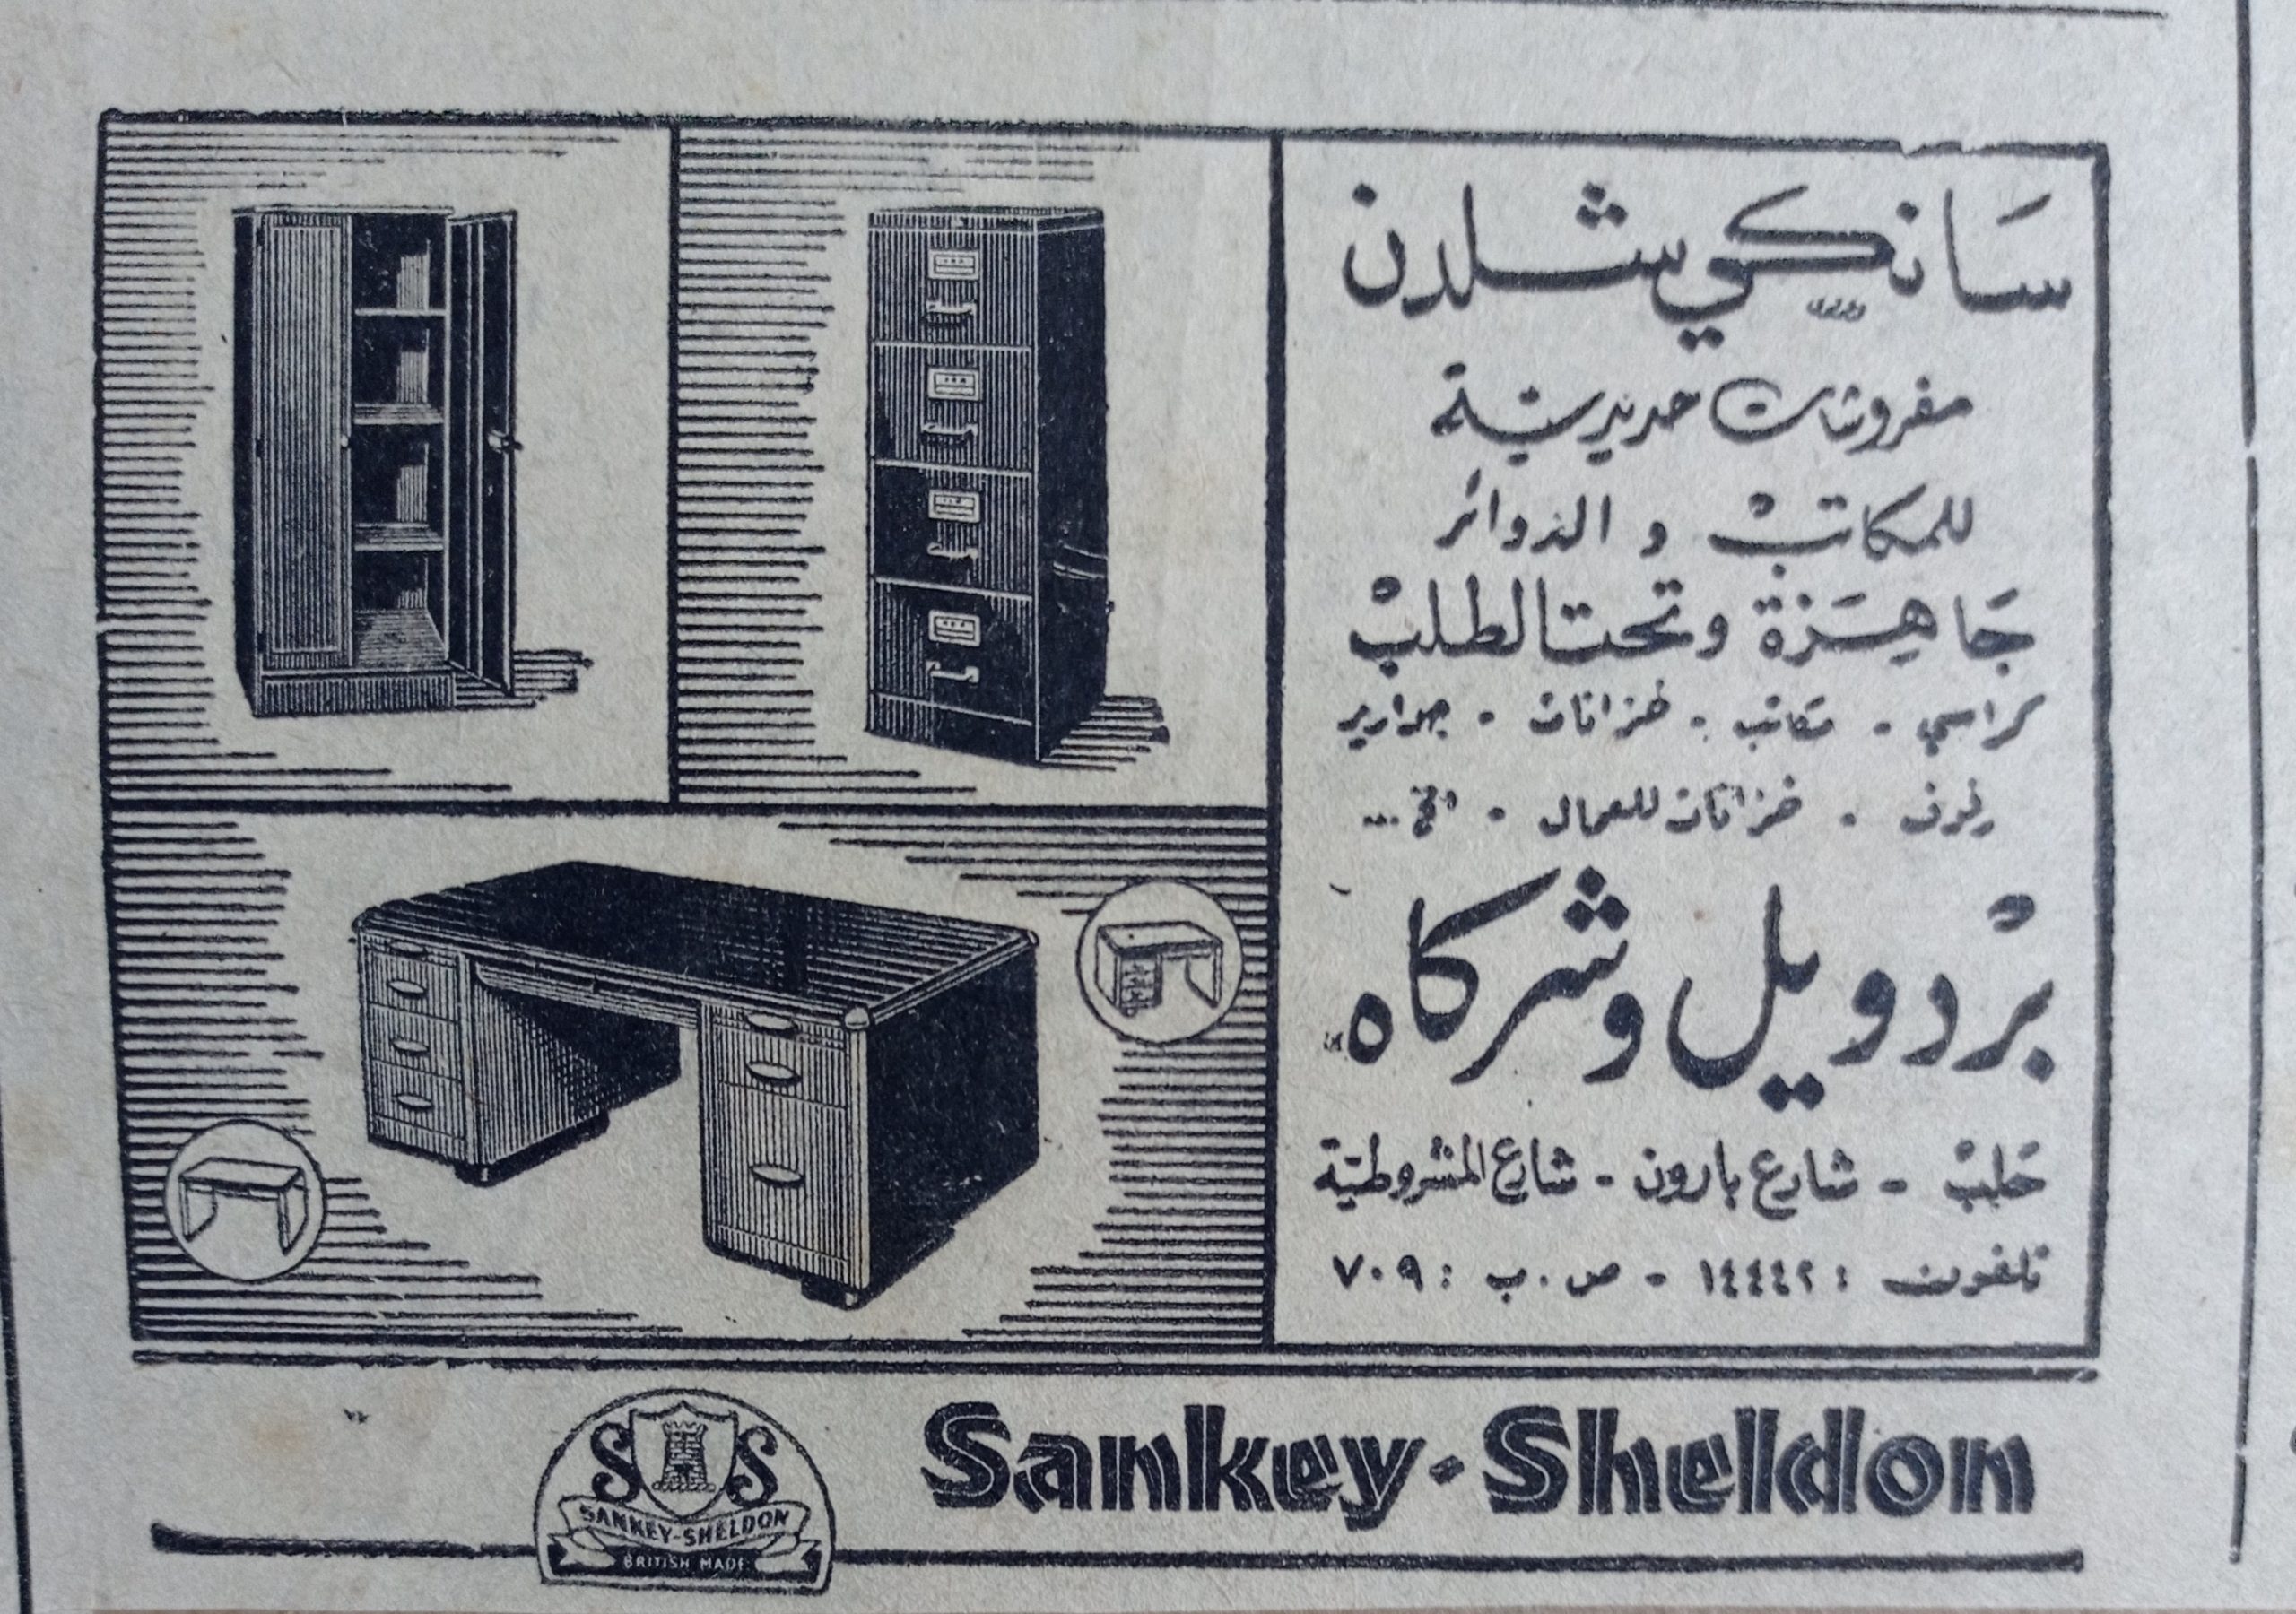 التاريخ السوري المعاصر - اعلان مفروشات سانكي شلدن توزيع بردويل و شركاه عام 1956